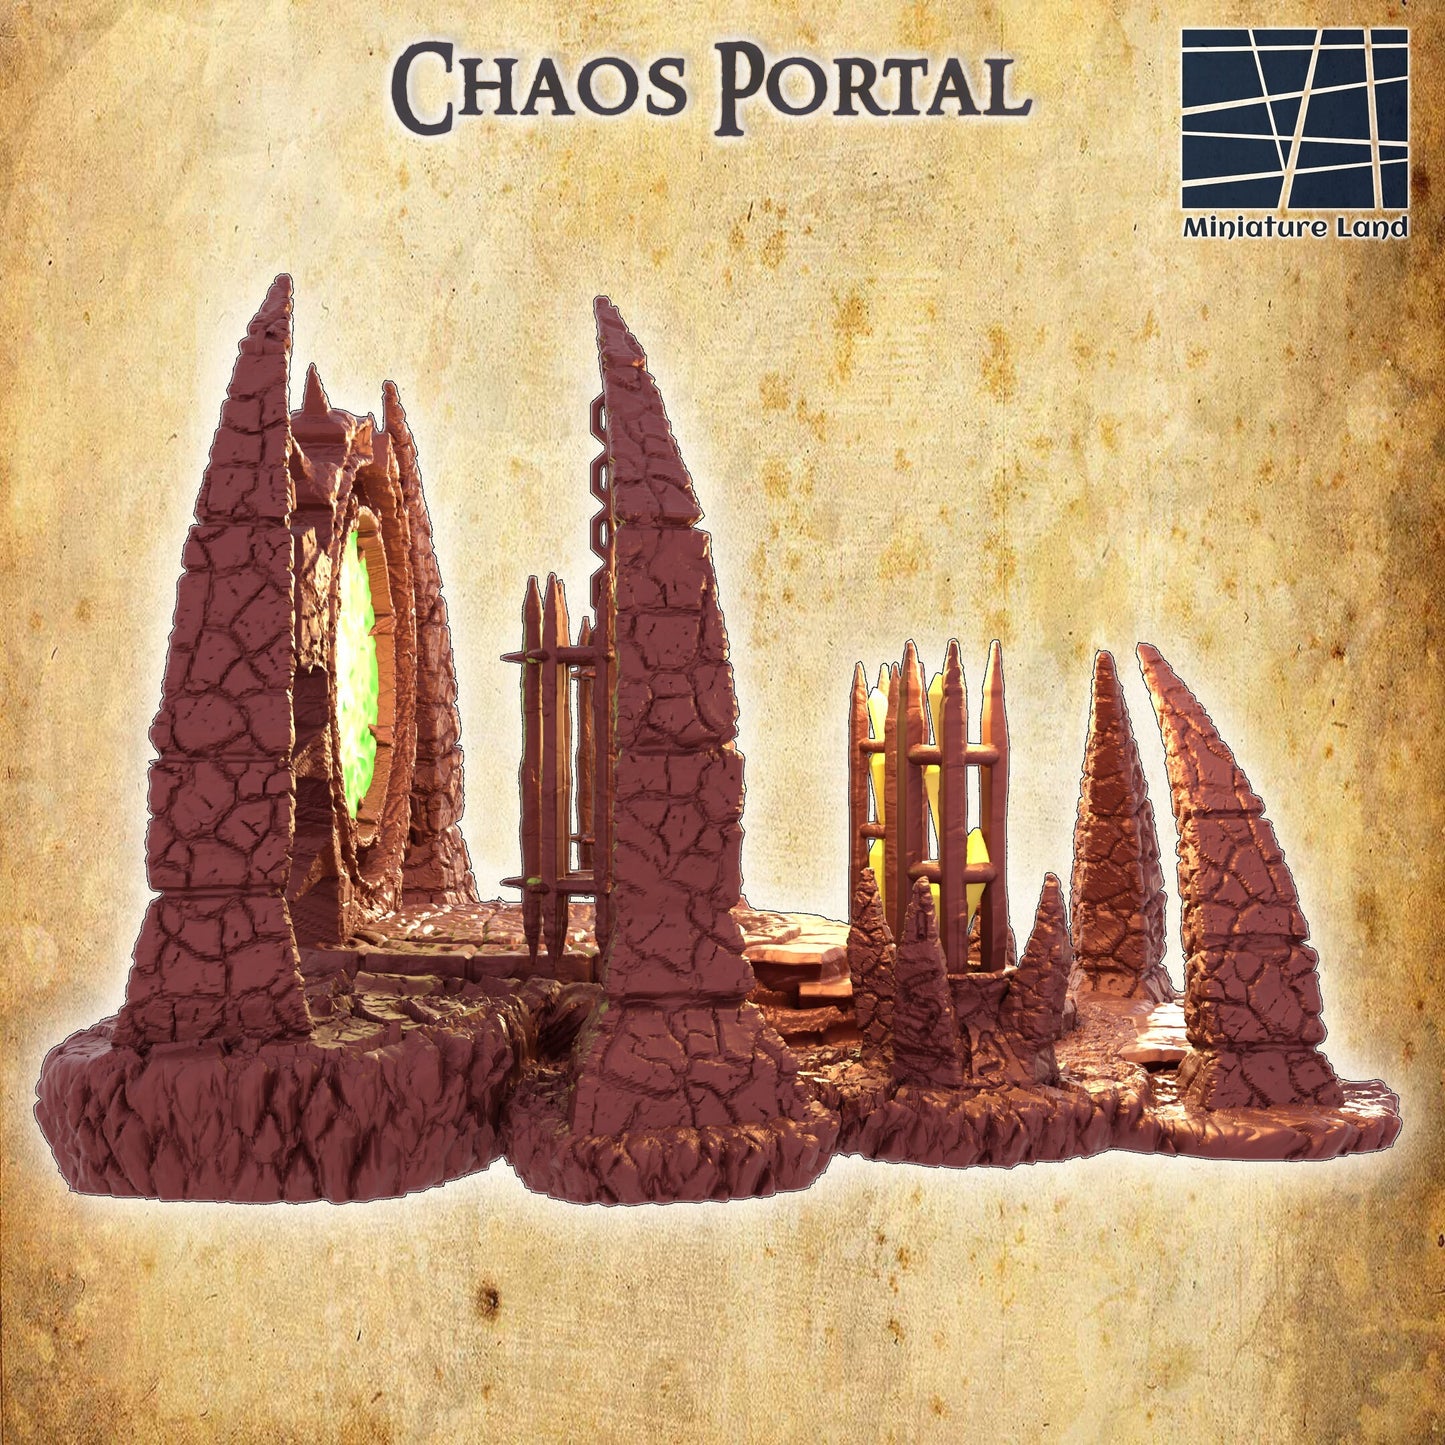 Chaos Portal, Portal